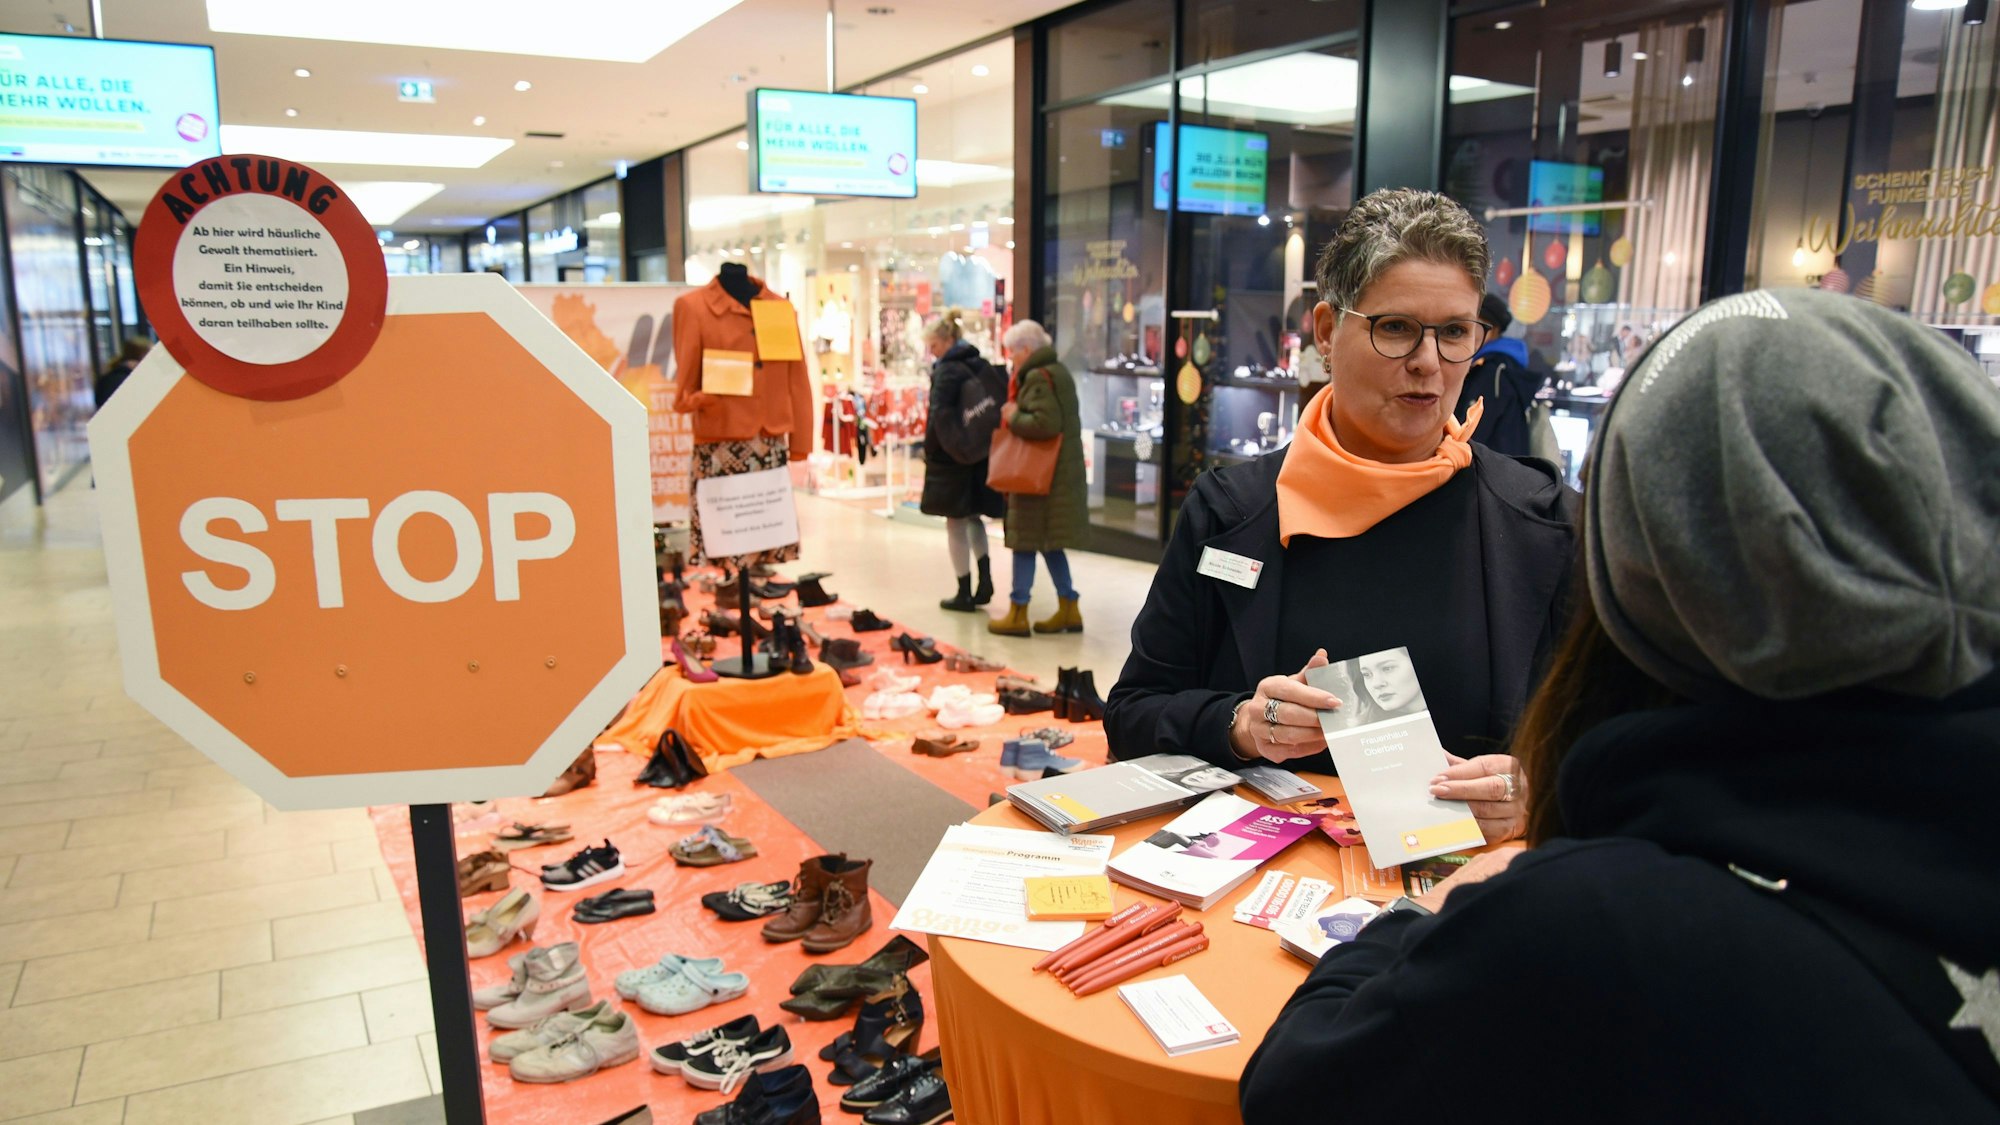 Ein Stoppschild steht neben einem Beratungsstand, eine Frau hält eine Broschüre in Händen, um dem Boden stehen Schuhe paarweise aufgereiht.